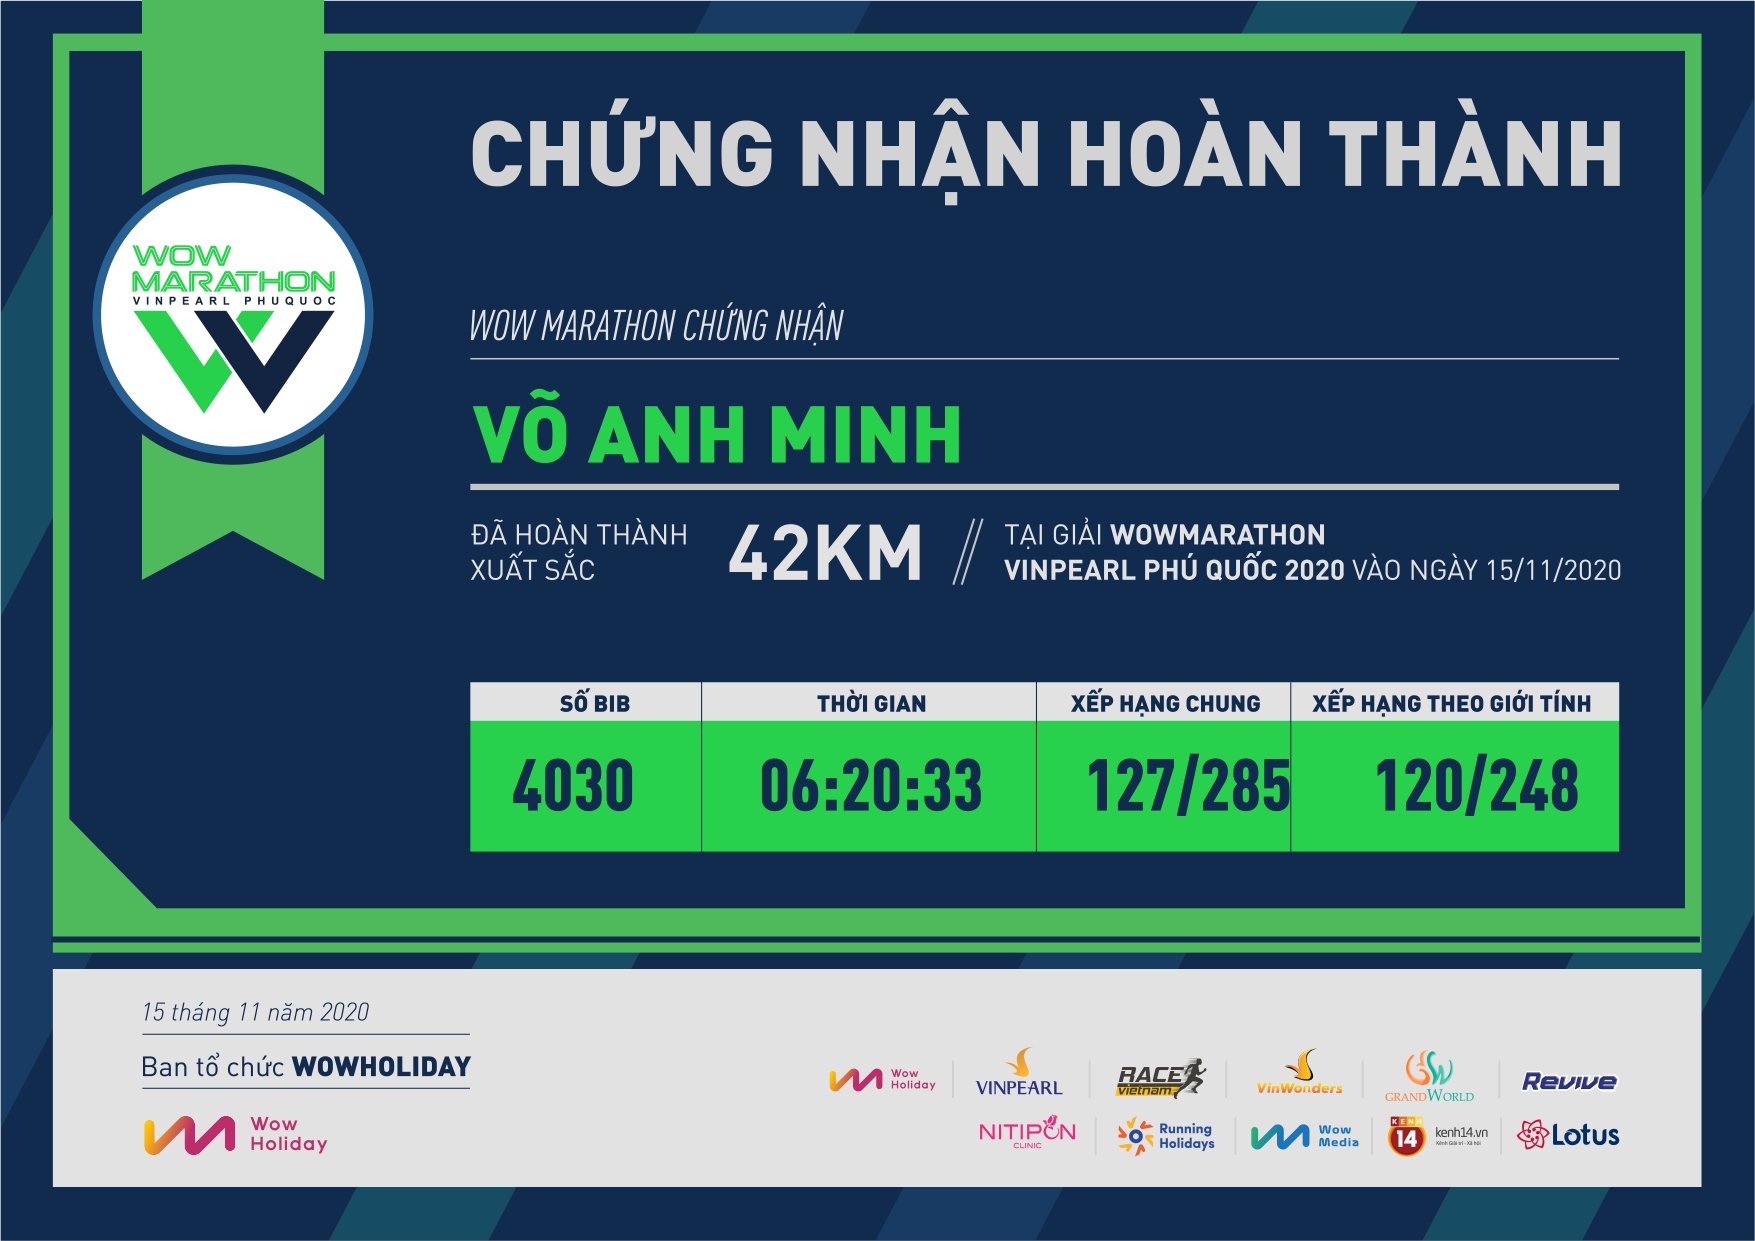 4030 - Võ Anh Minh